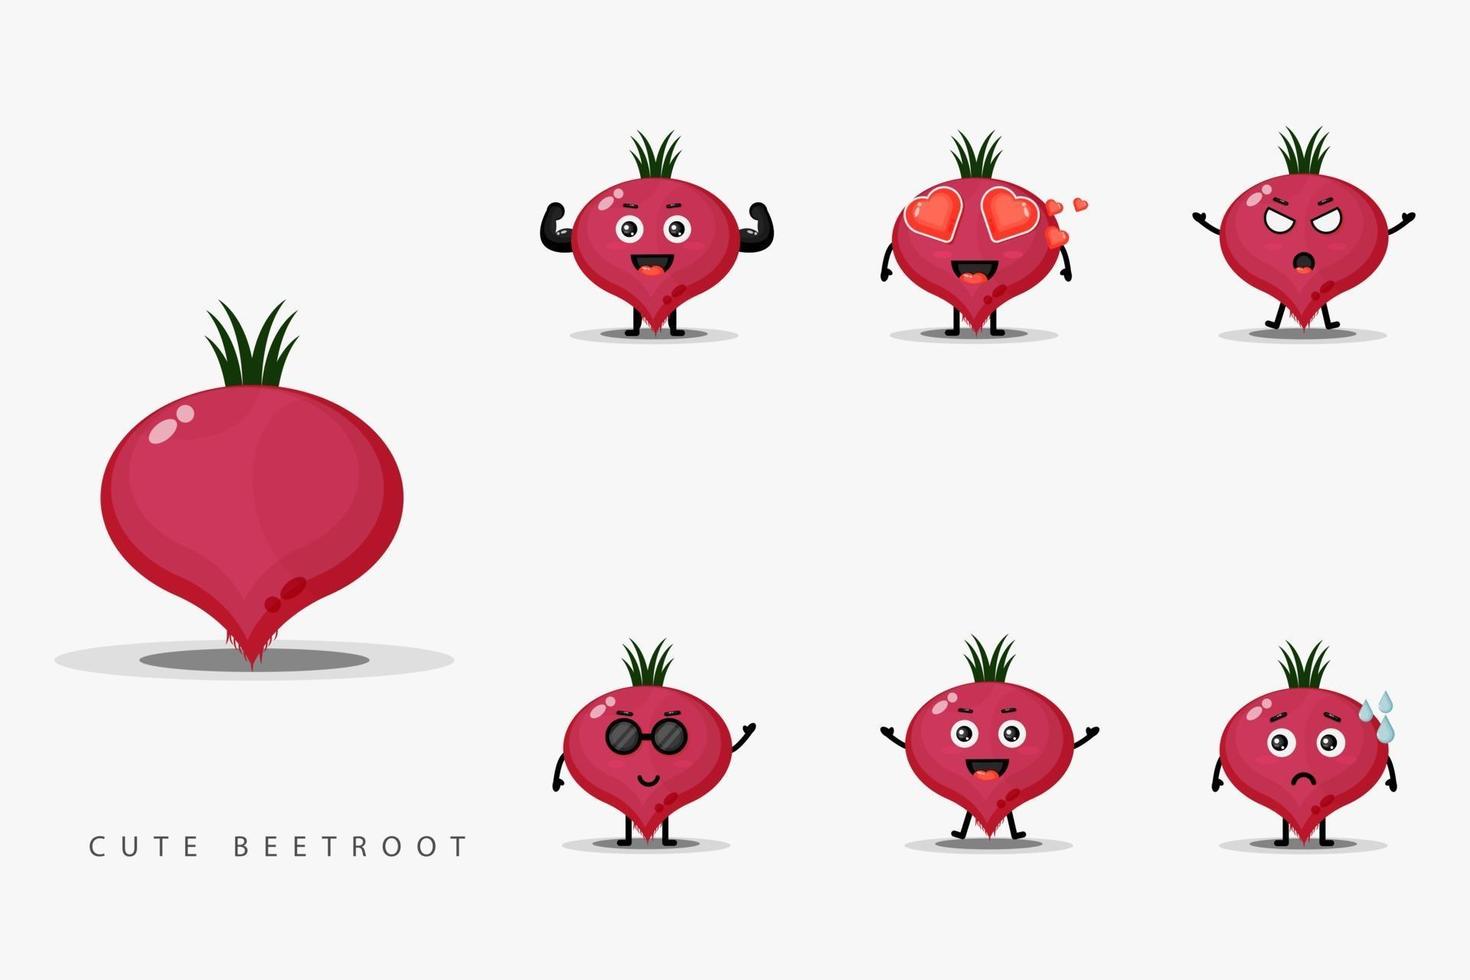 Cute beetroot mascot design set vector